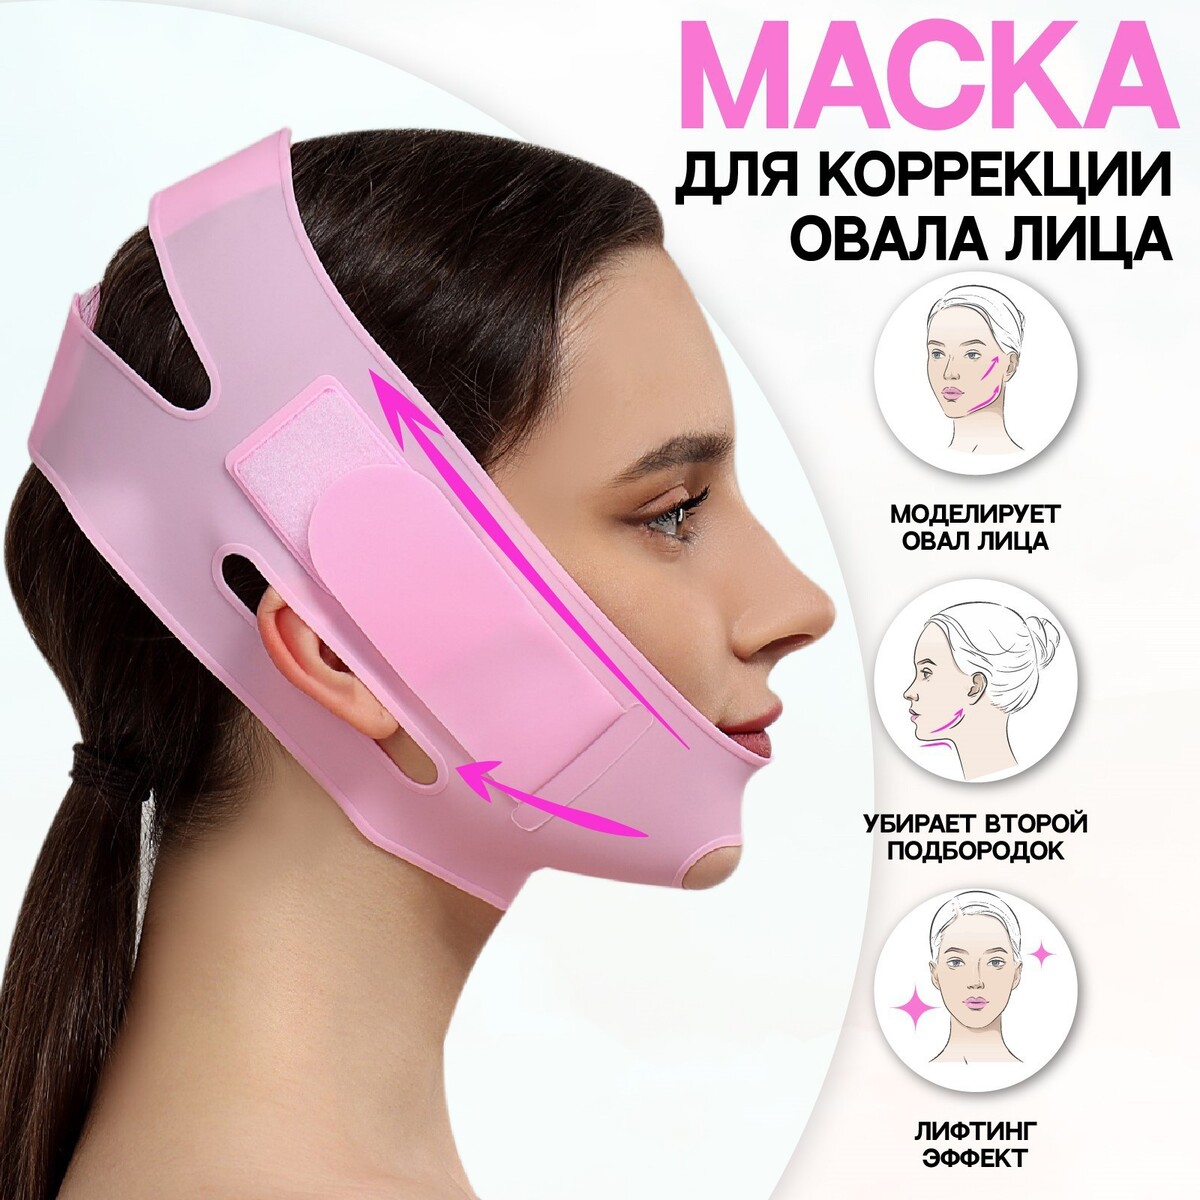 Маска для коррекции овала лица, на липучке, 60,5 × 10 см, в коробке, цвет розовый маска пони флатти цв желтый розовый